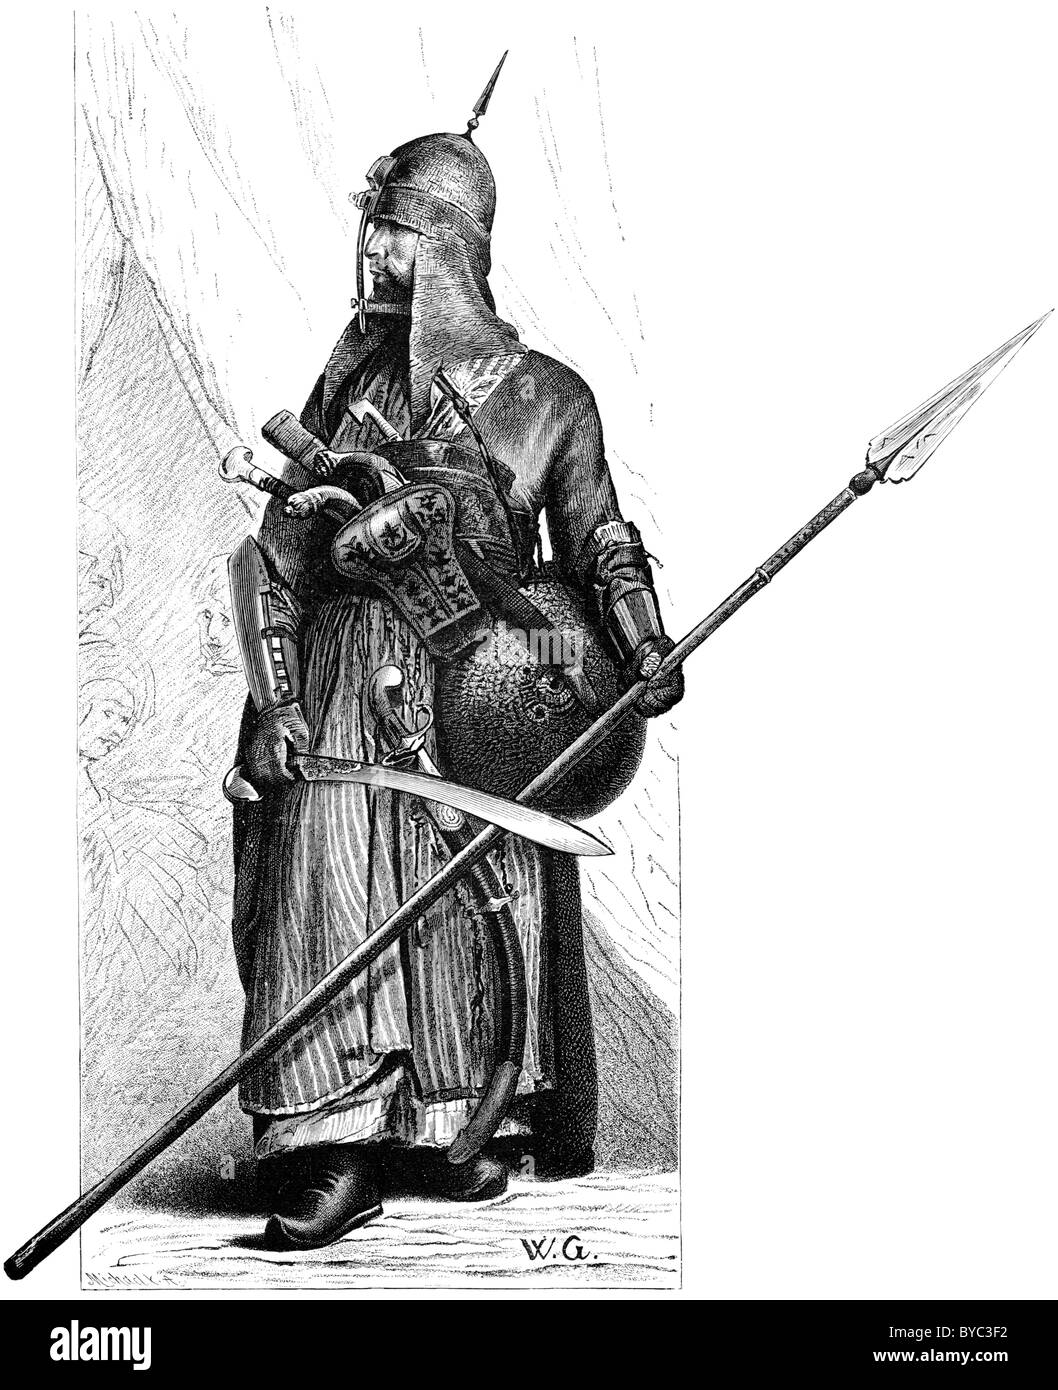 1878 gravure d'une années 1790 soldat mamelouk en Egypte Banque D'Images